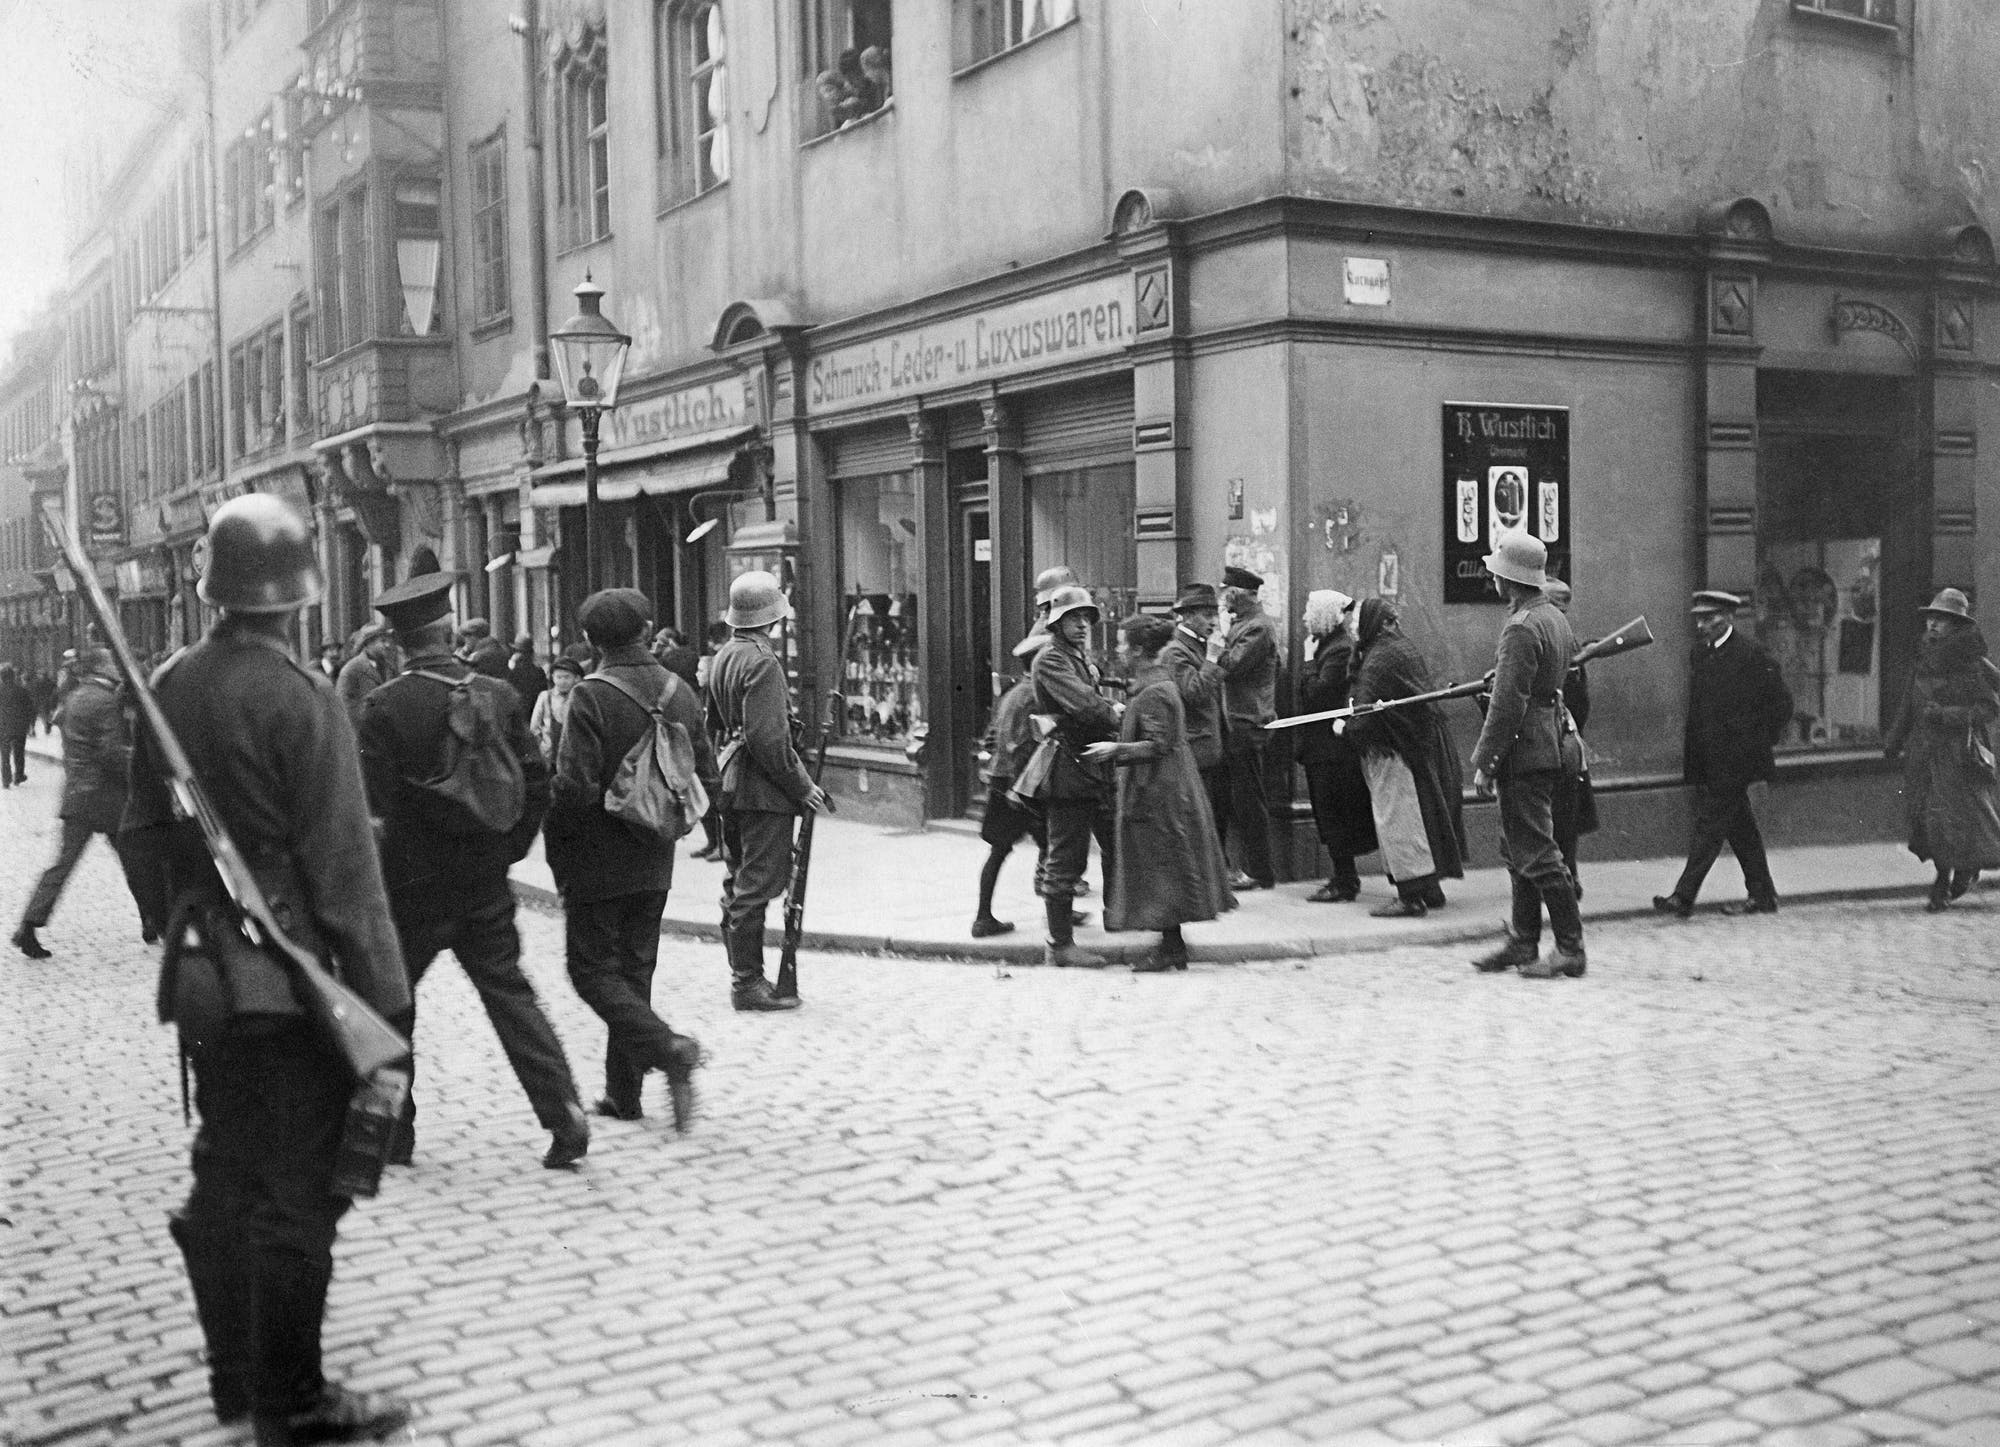 Am 23. Oktober 1923  marschierte die Reichswehr in Sachsen ein, wie hier in Freiberg.